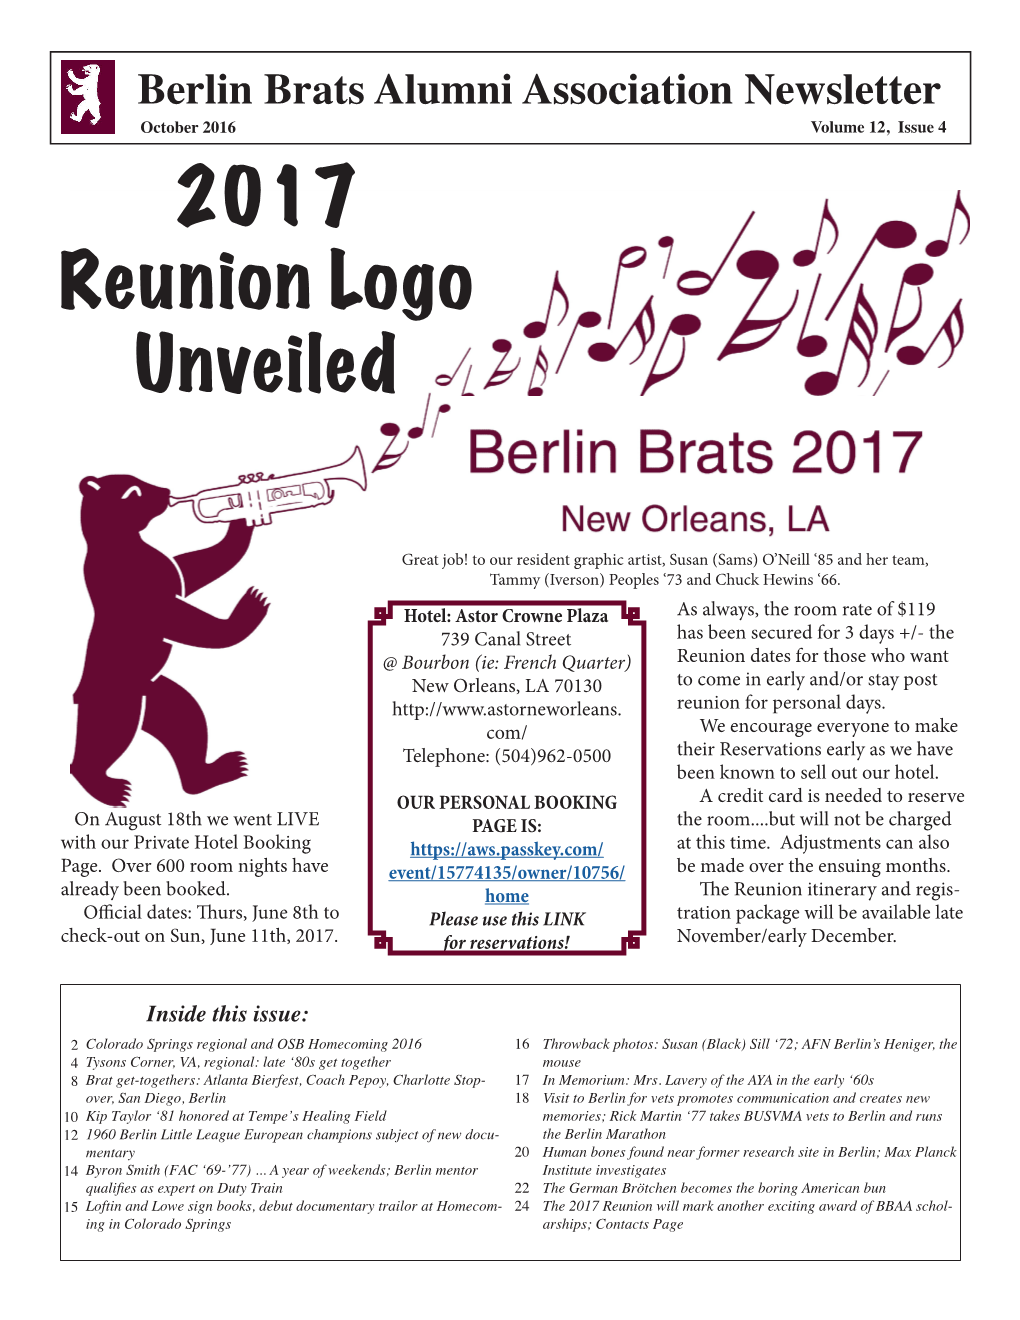 2017 Reunion Logo Unveiled